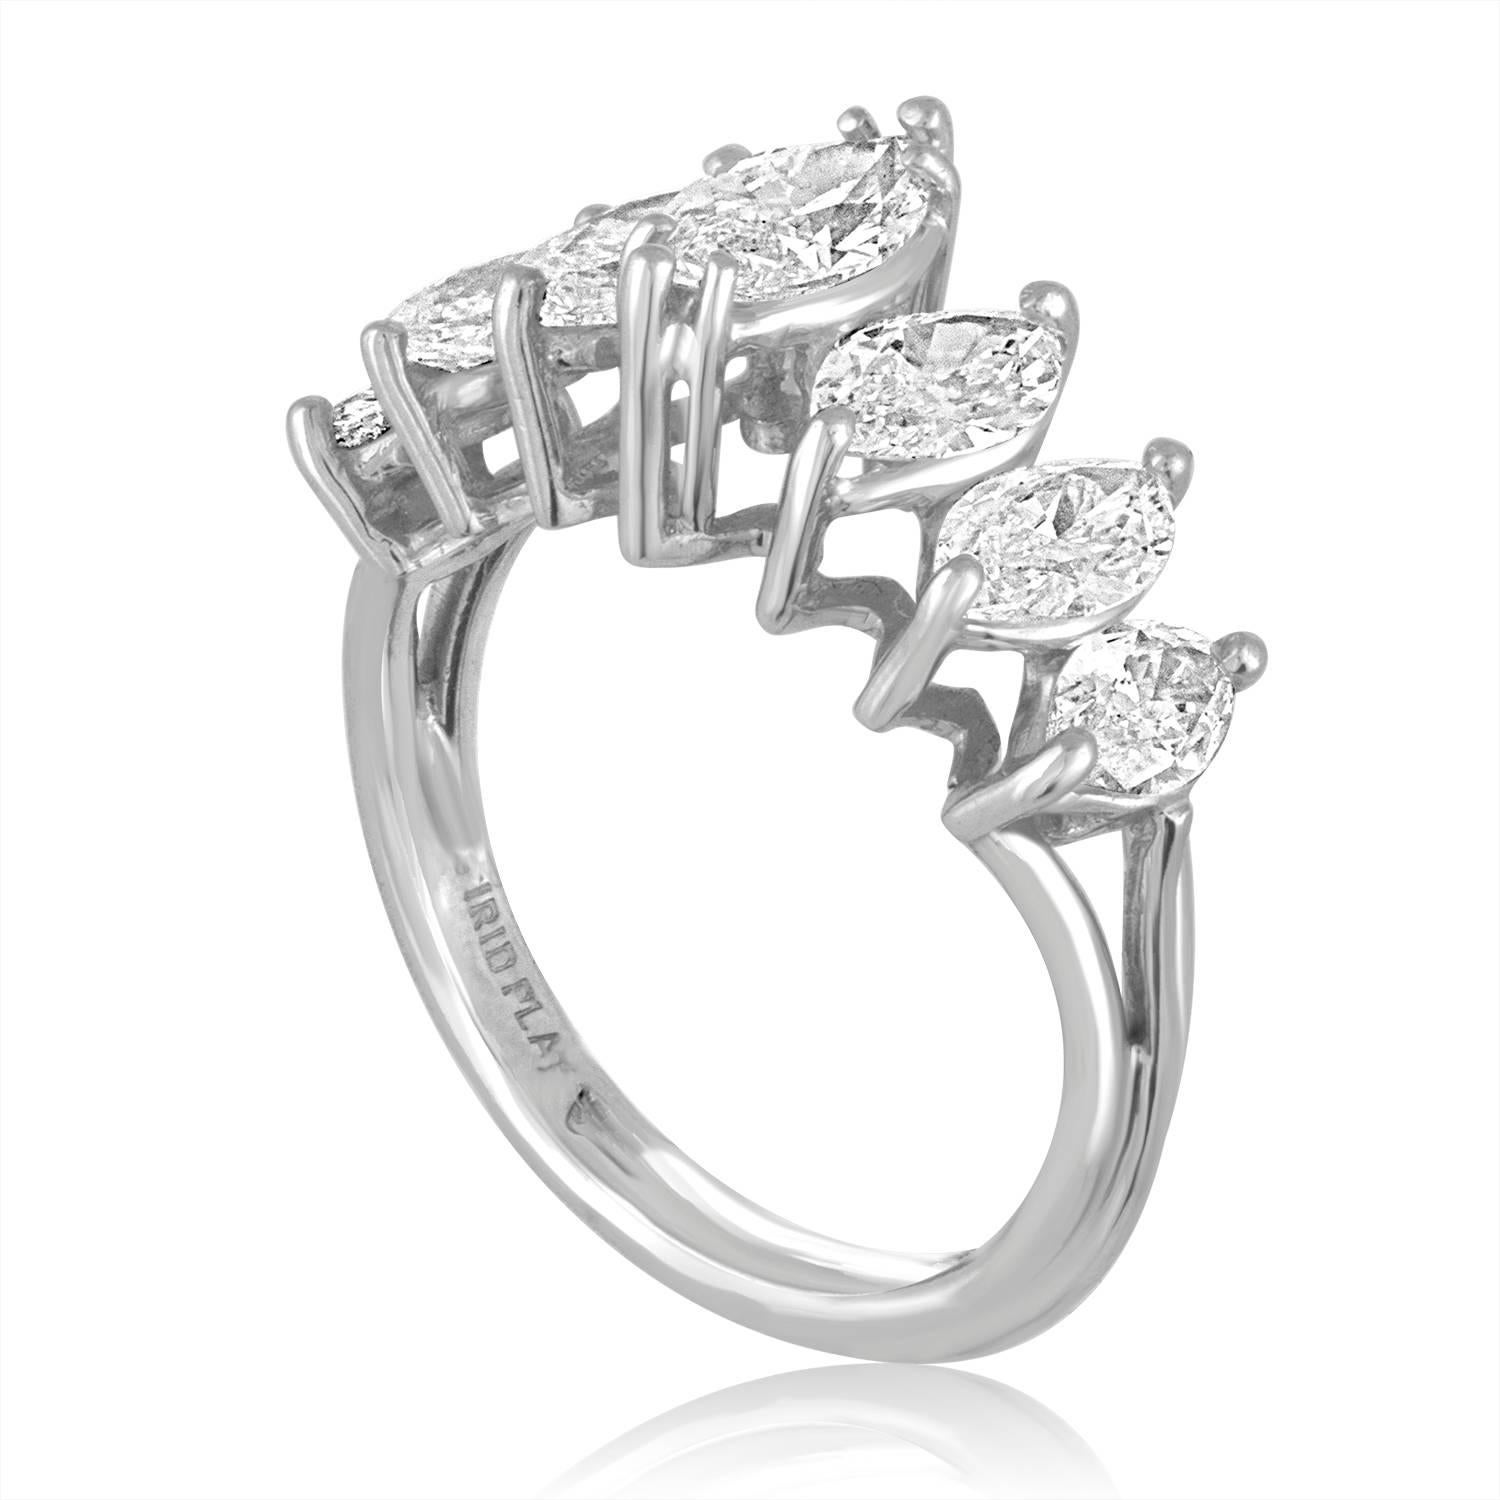 Umwerfend klassischer Ring
Der Ring ist aus Platin
Es gibt 7 Marquis-Steine 2,23 Karat Diamanten G/H VS
Der Ring ist eine Größe 6,5, sizable.
Der Ring wiegt 6,7 Gramm